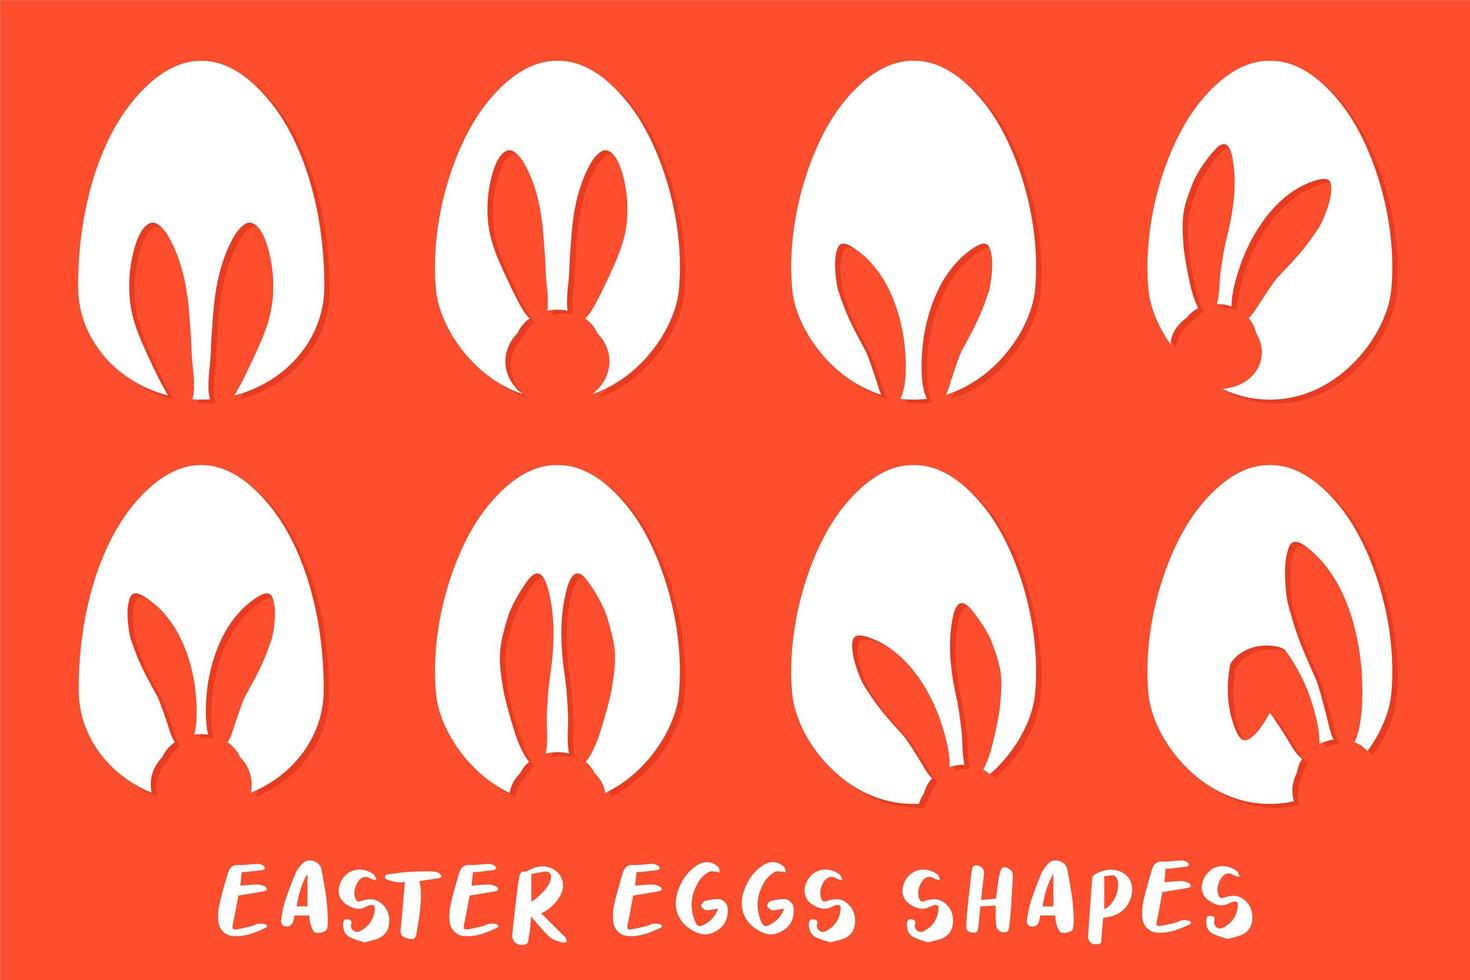 oreilles de lapin et silhouette de formes d'oeufs de pâques - grand ensemble d'icônes. symbole traditionnel de Pâques. vecteur